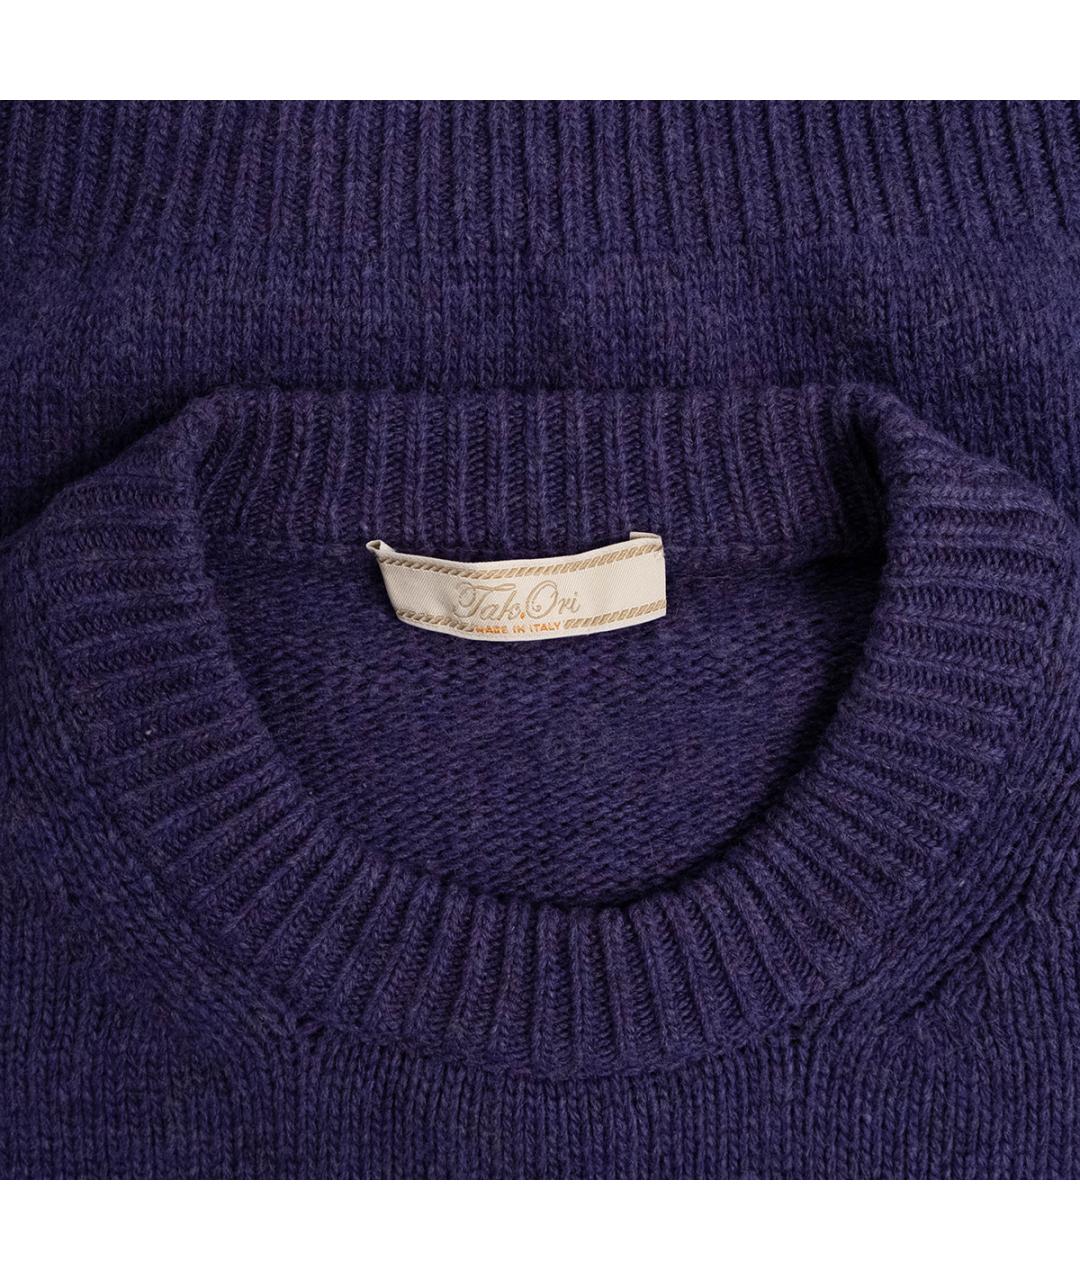 TAK.ORI Фиолетовый шерстяной джемпер / свитер, фото 3